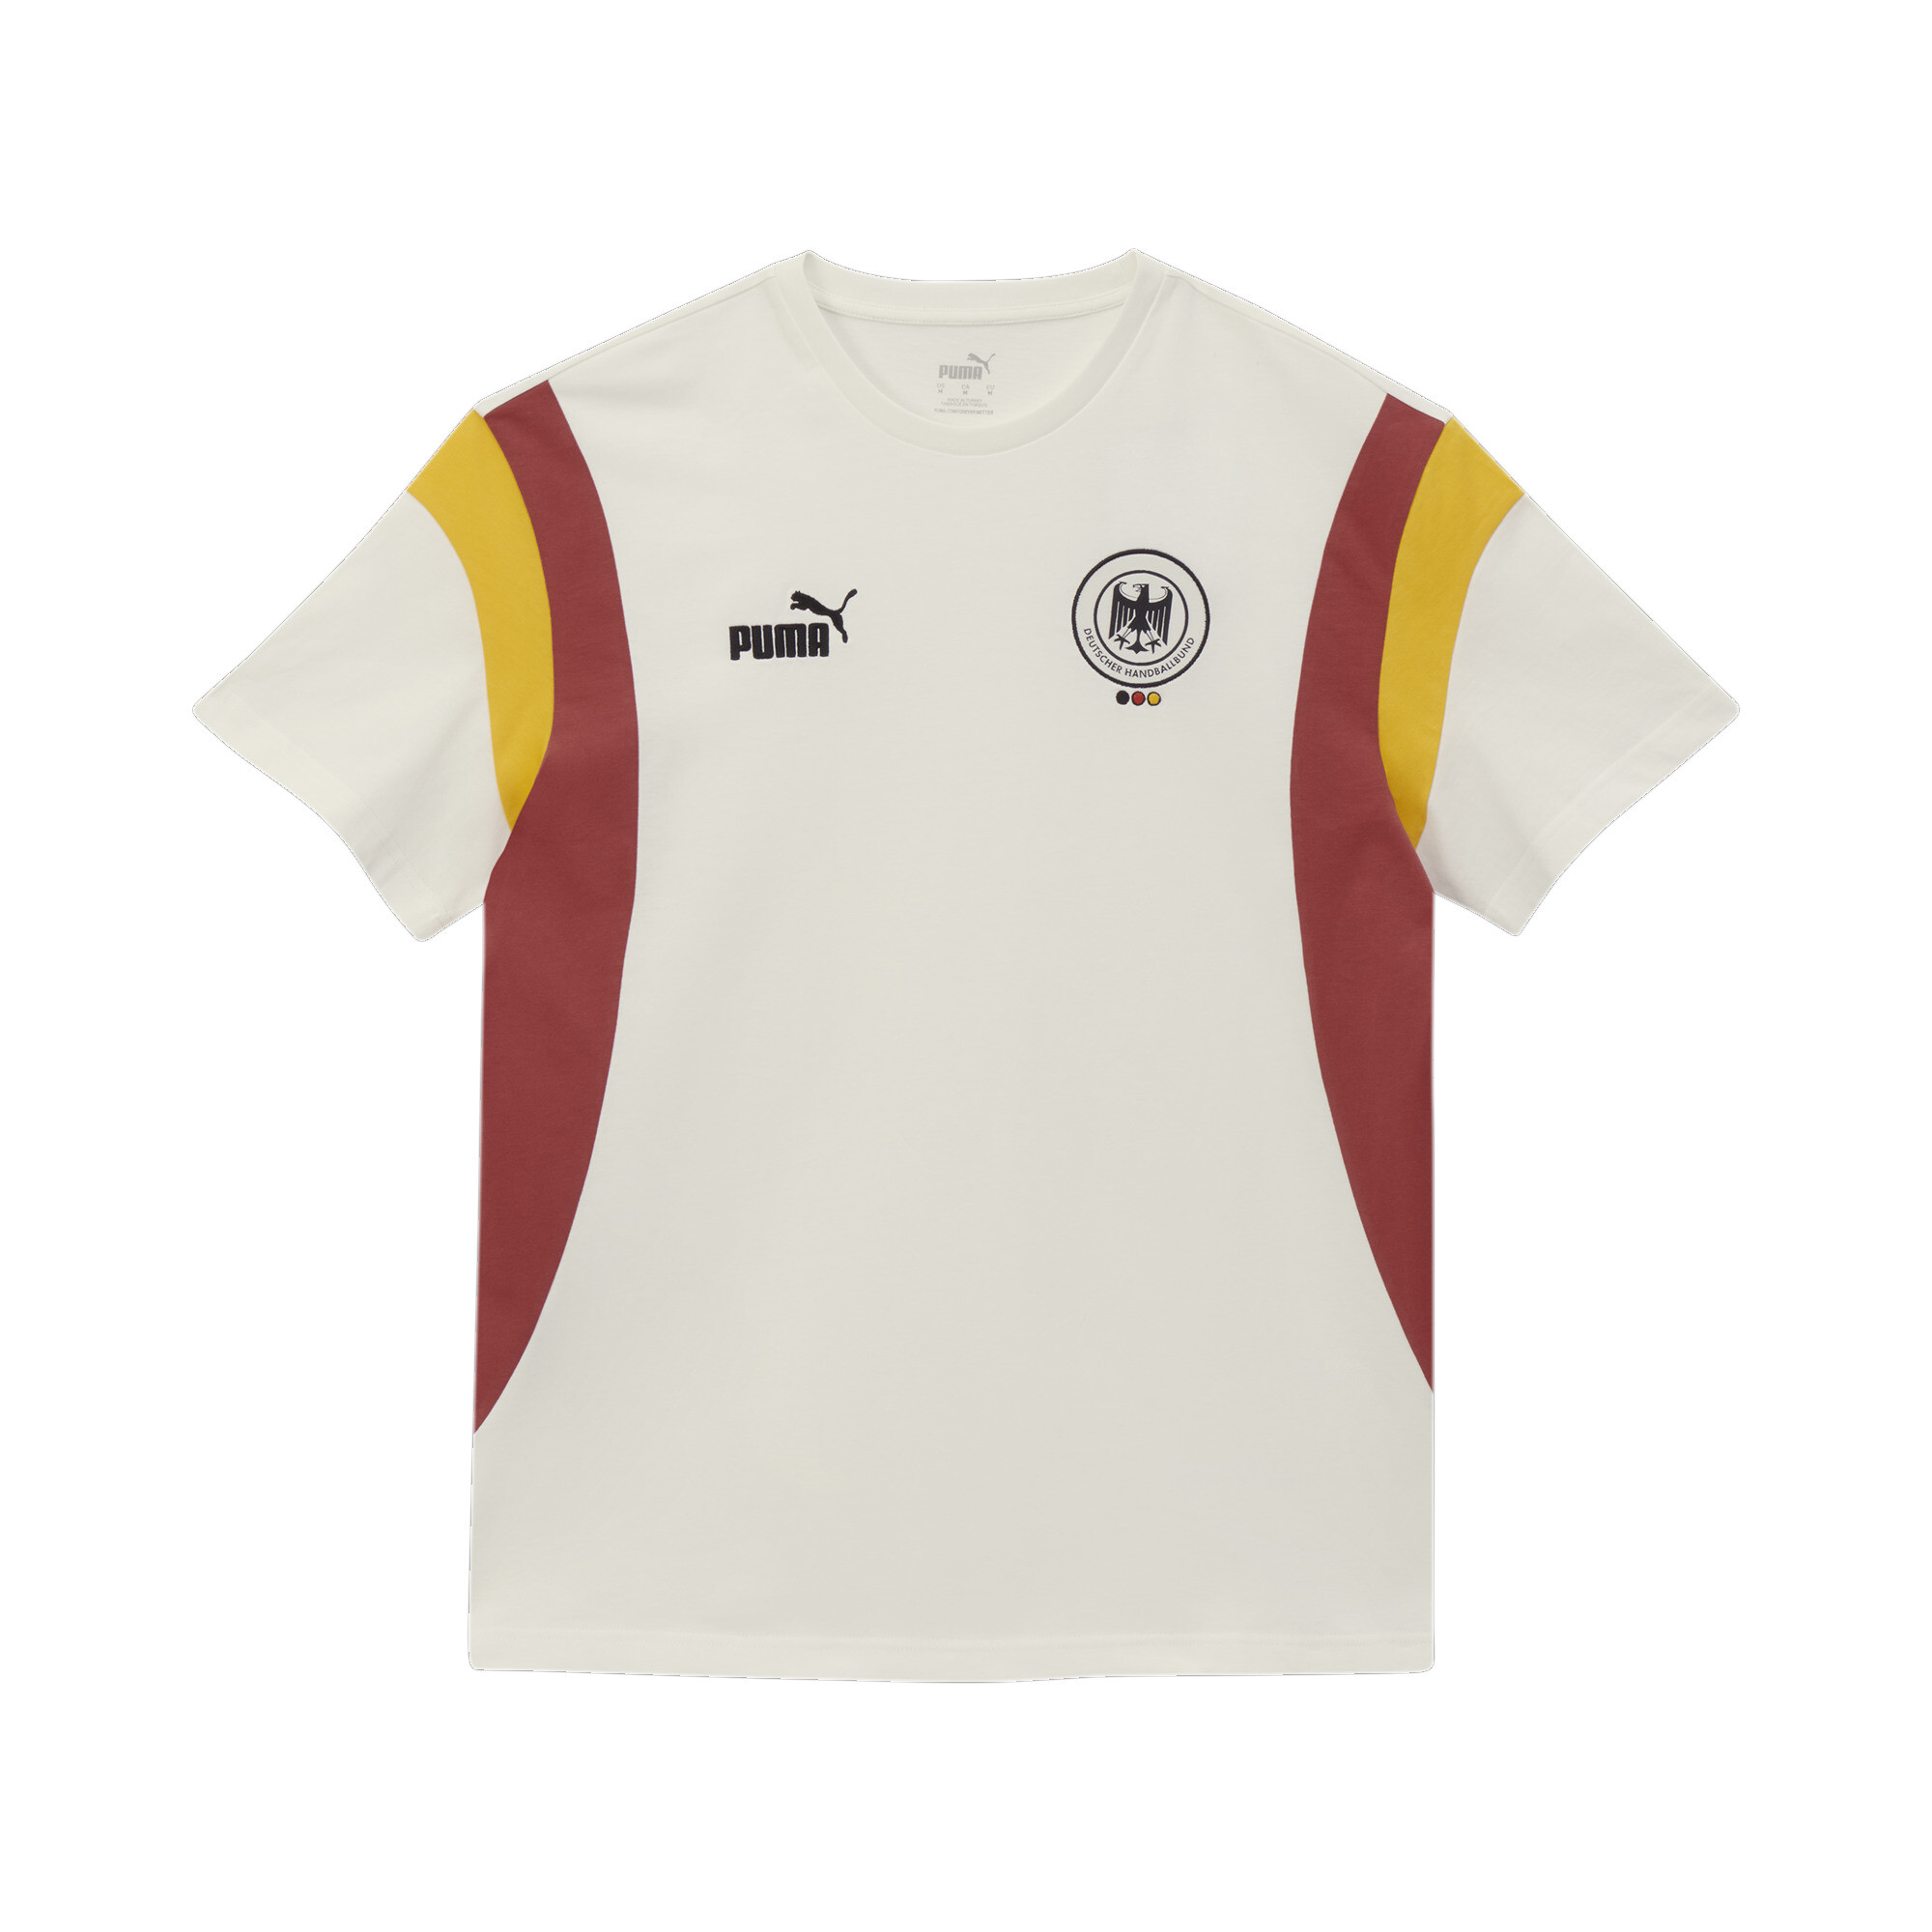 Men's Puma Deutscher Handball Bund Archive's T-Shirt, White, Size XL, German